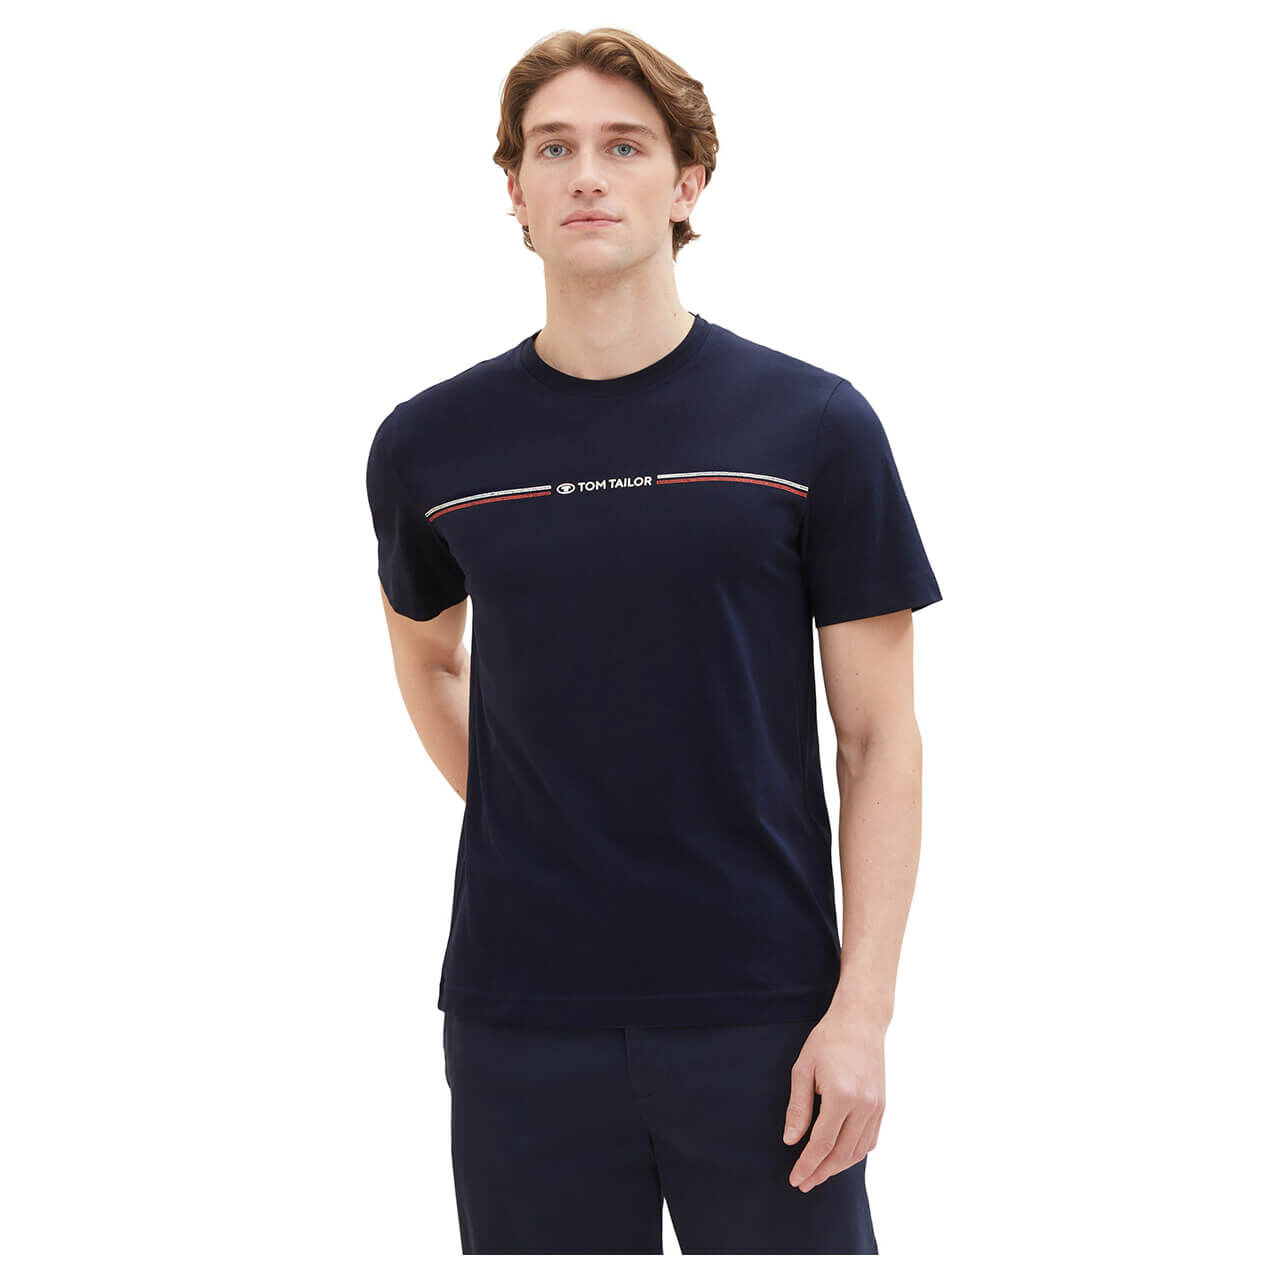 Tom Tailor Herren T-Shirt blue logo print